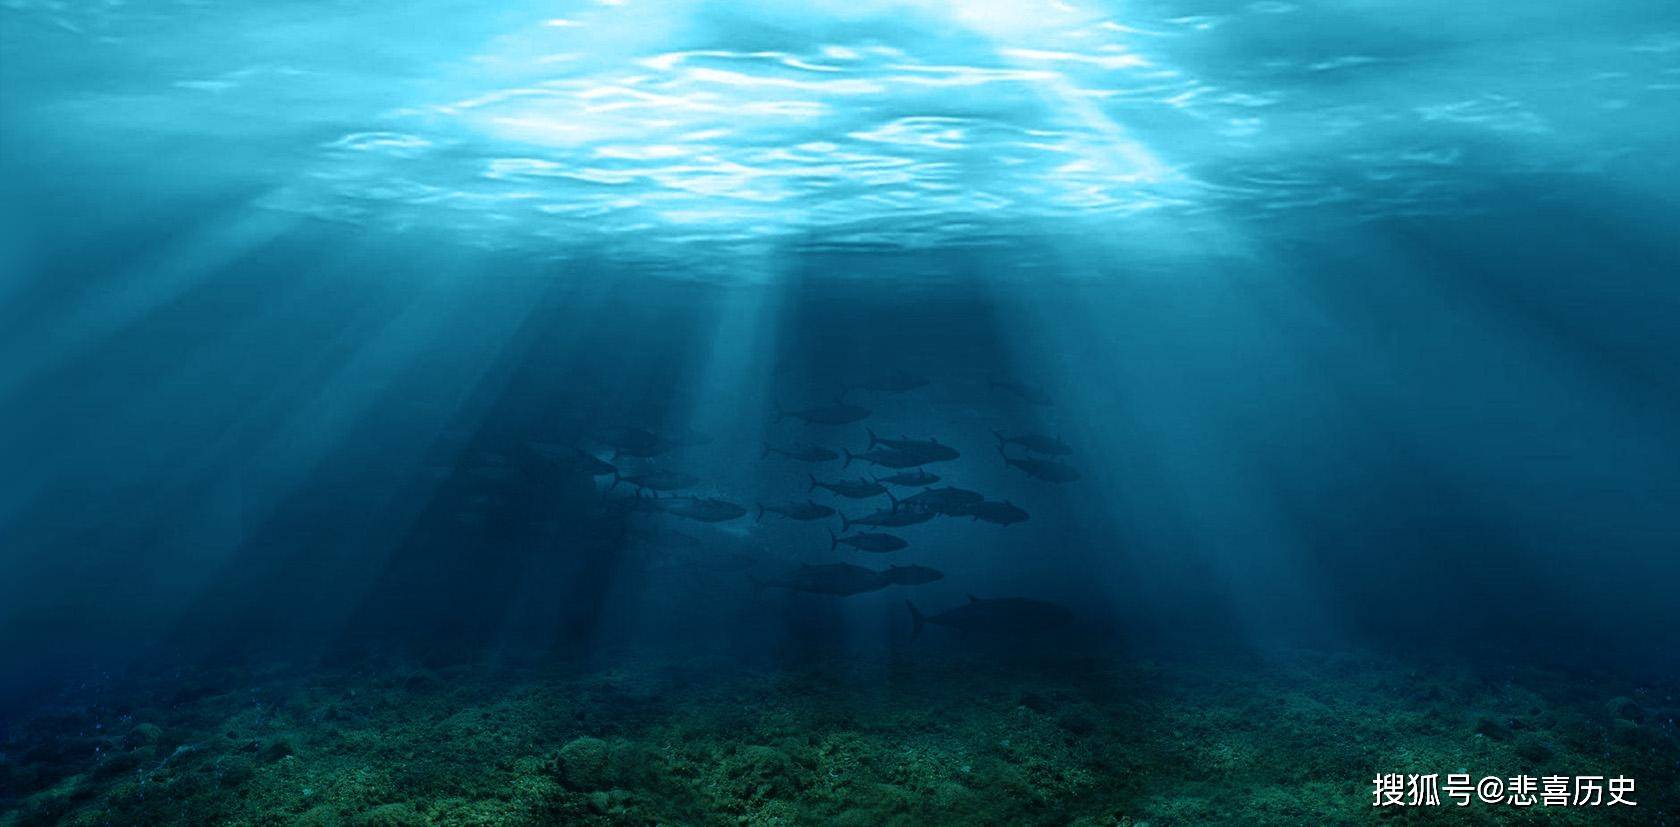 海底深处是否存在海底人类?种种事迹表明,可能真实存在